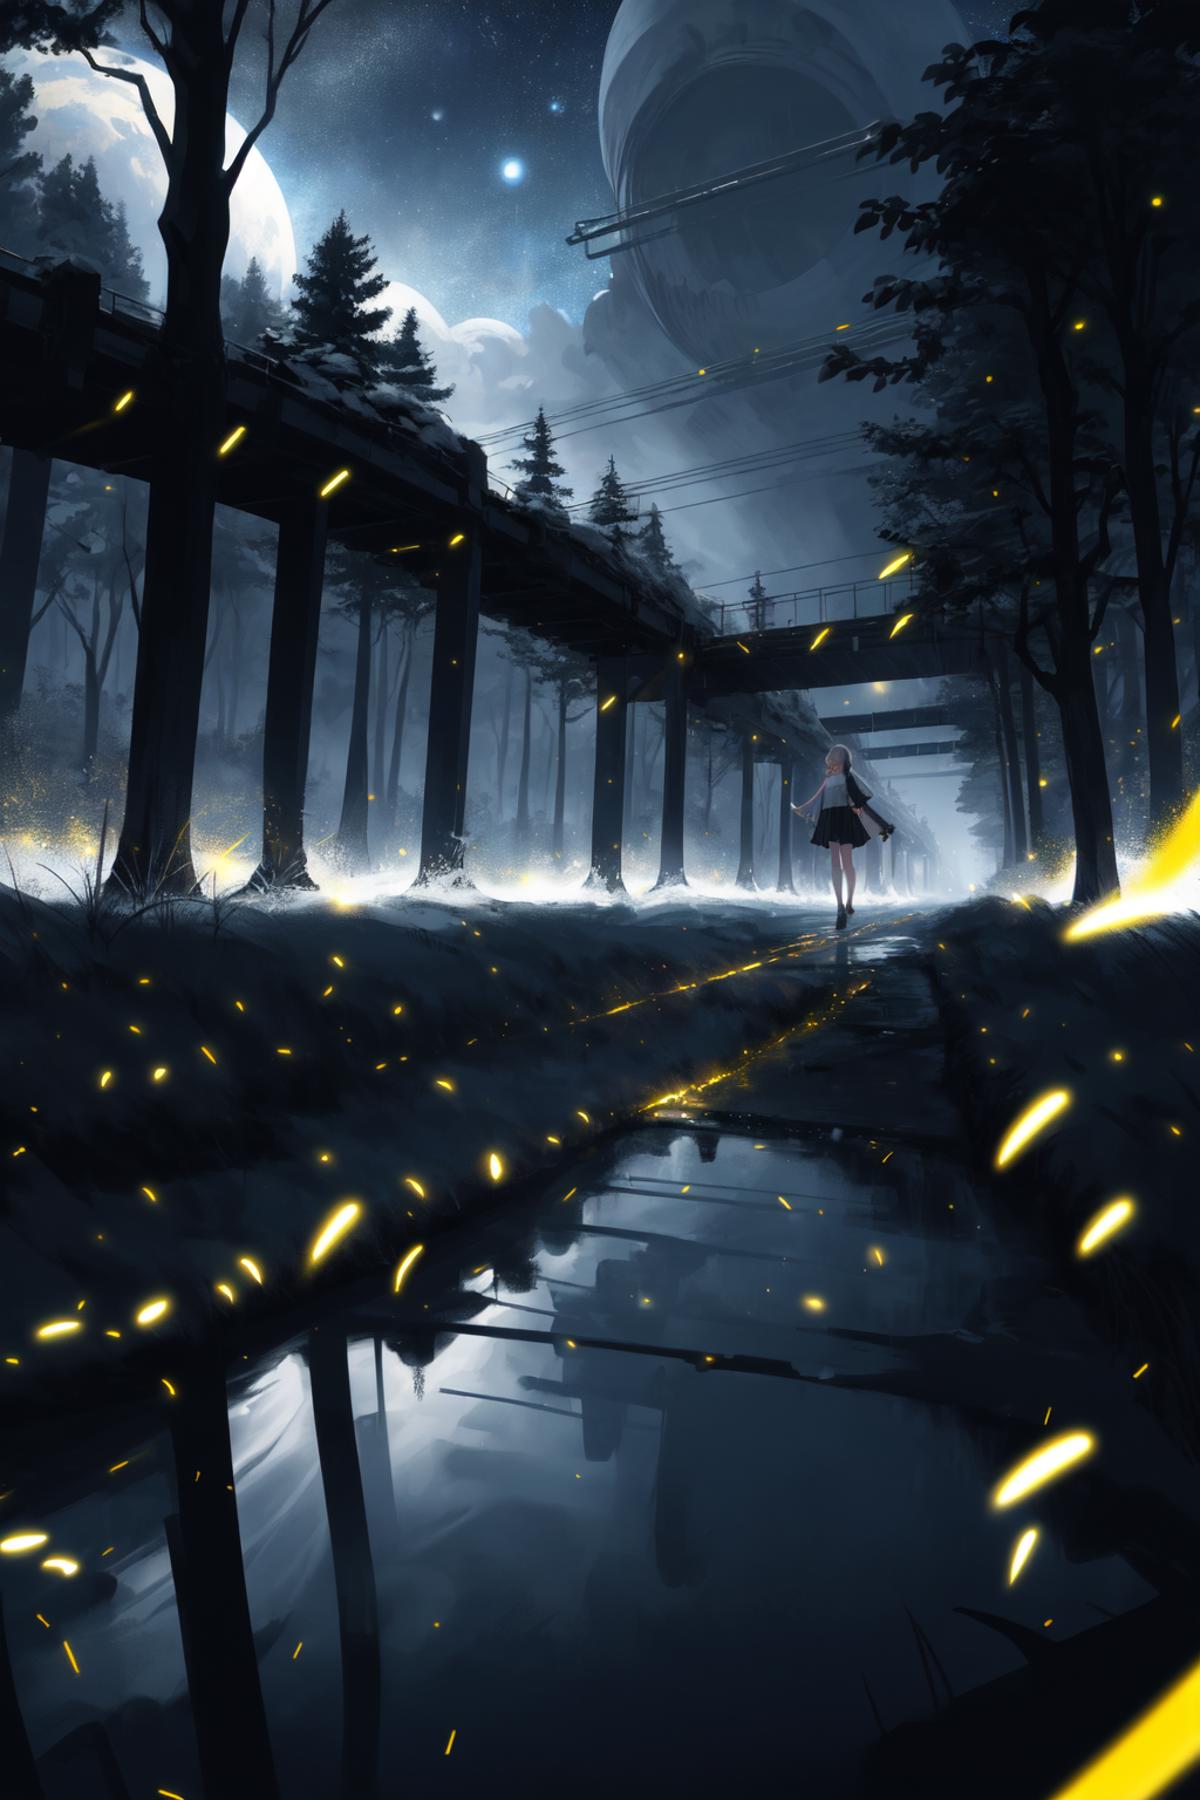 Fireflies ホタル image by Junbegun